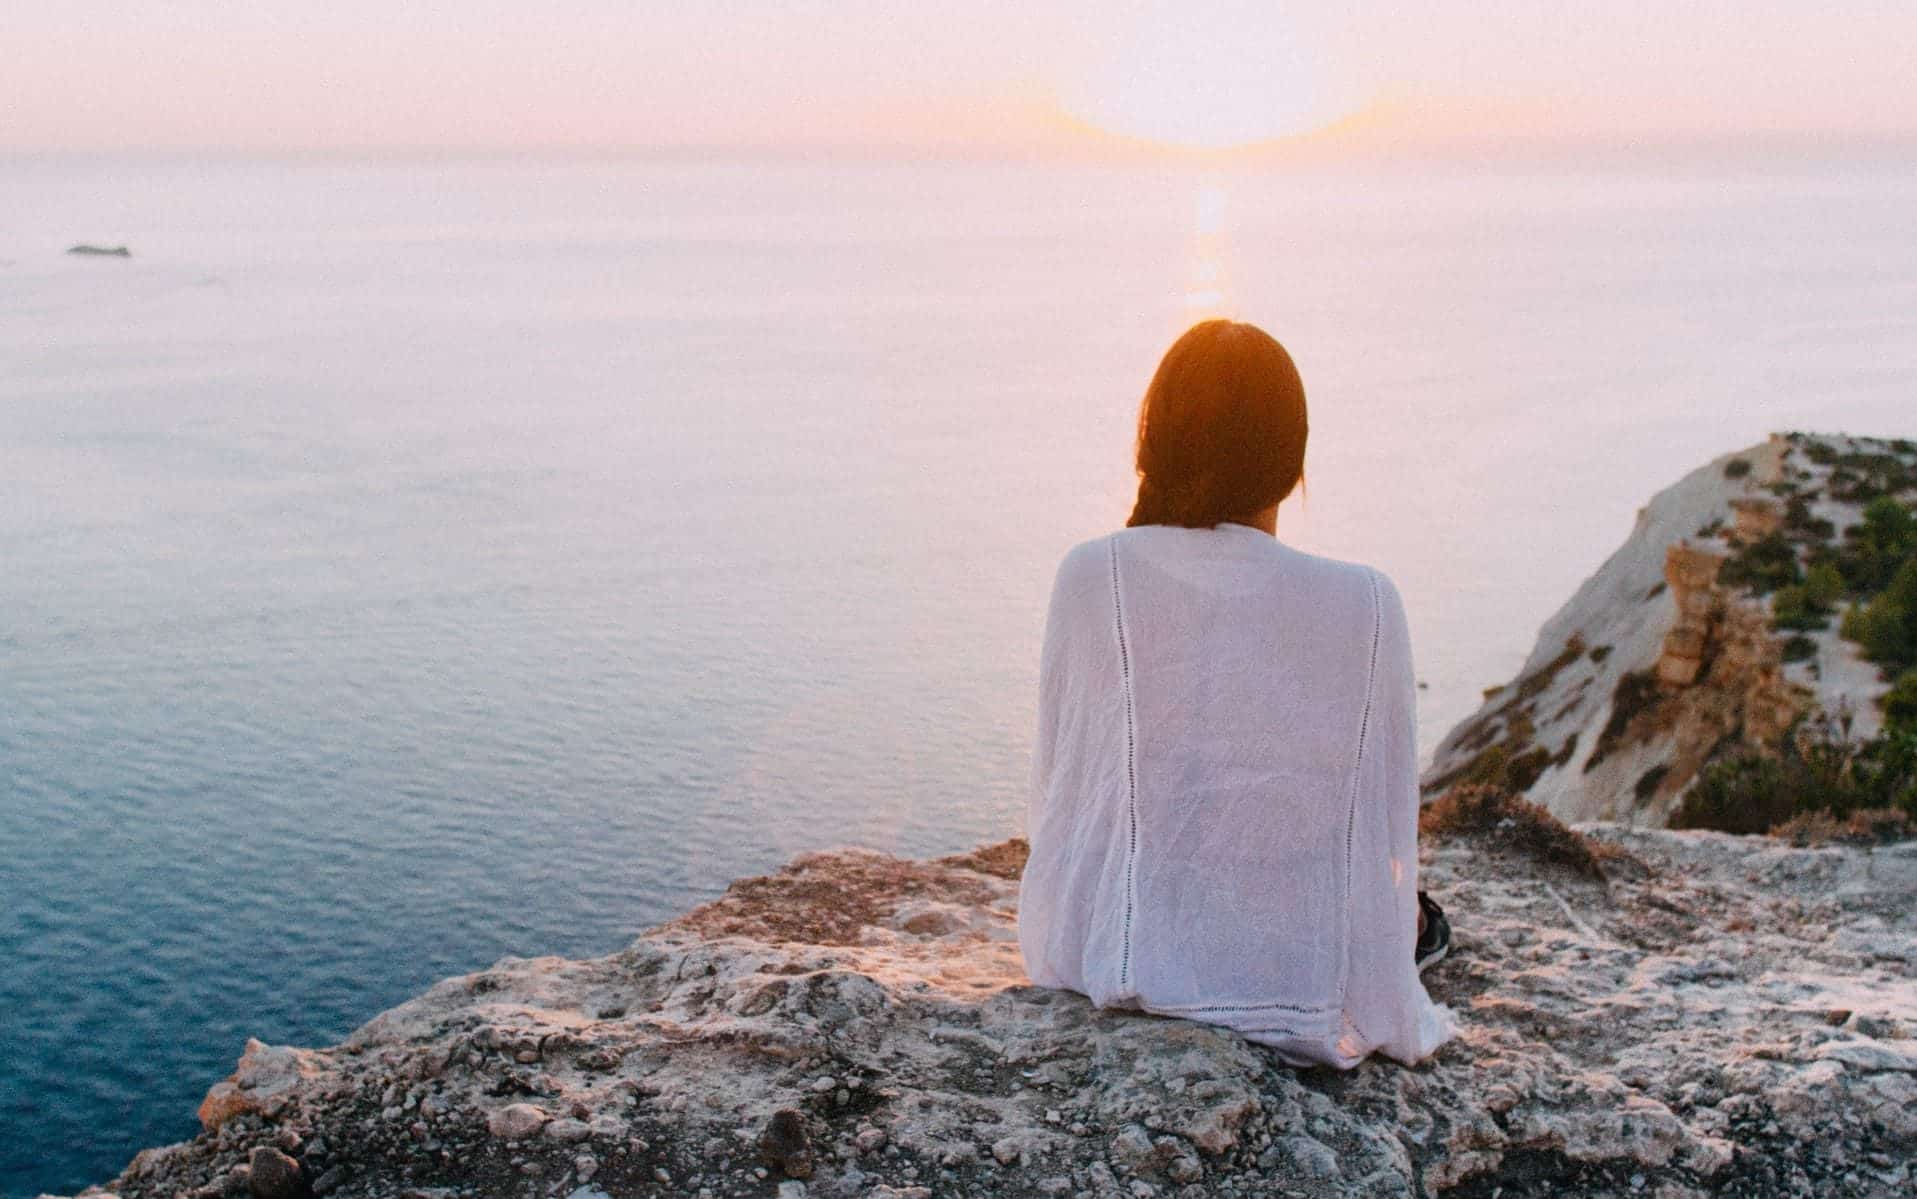 Uma mulher contemplando, de uma montanha, um horizonte com sol e um grande mar.